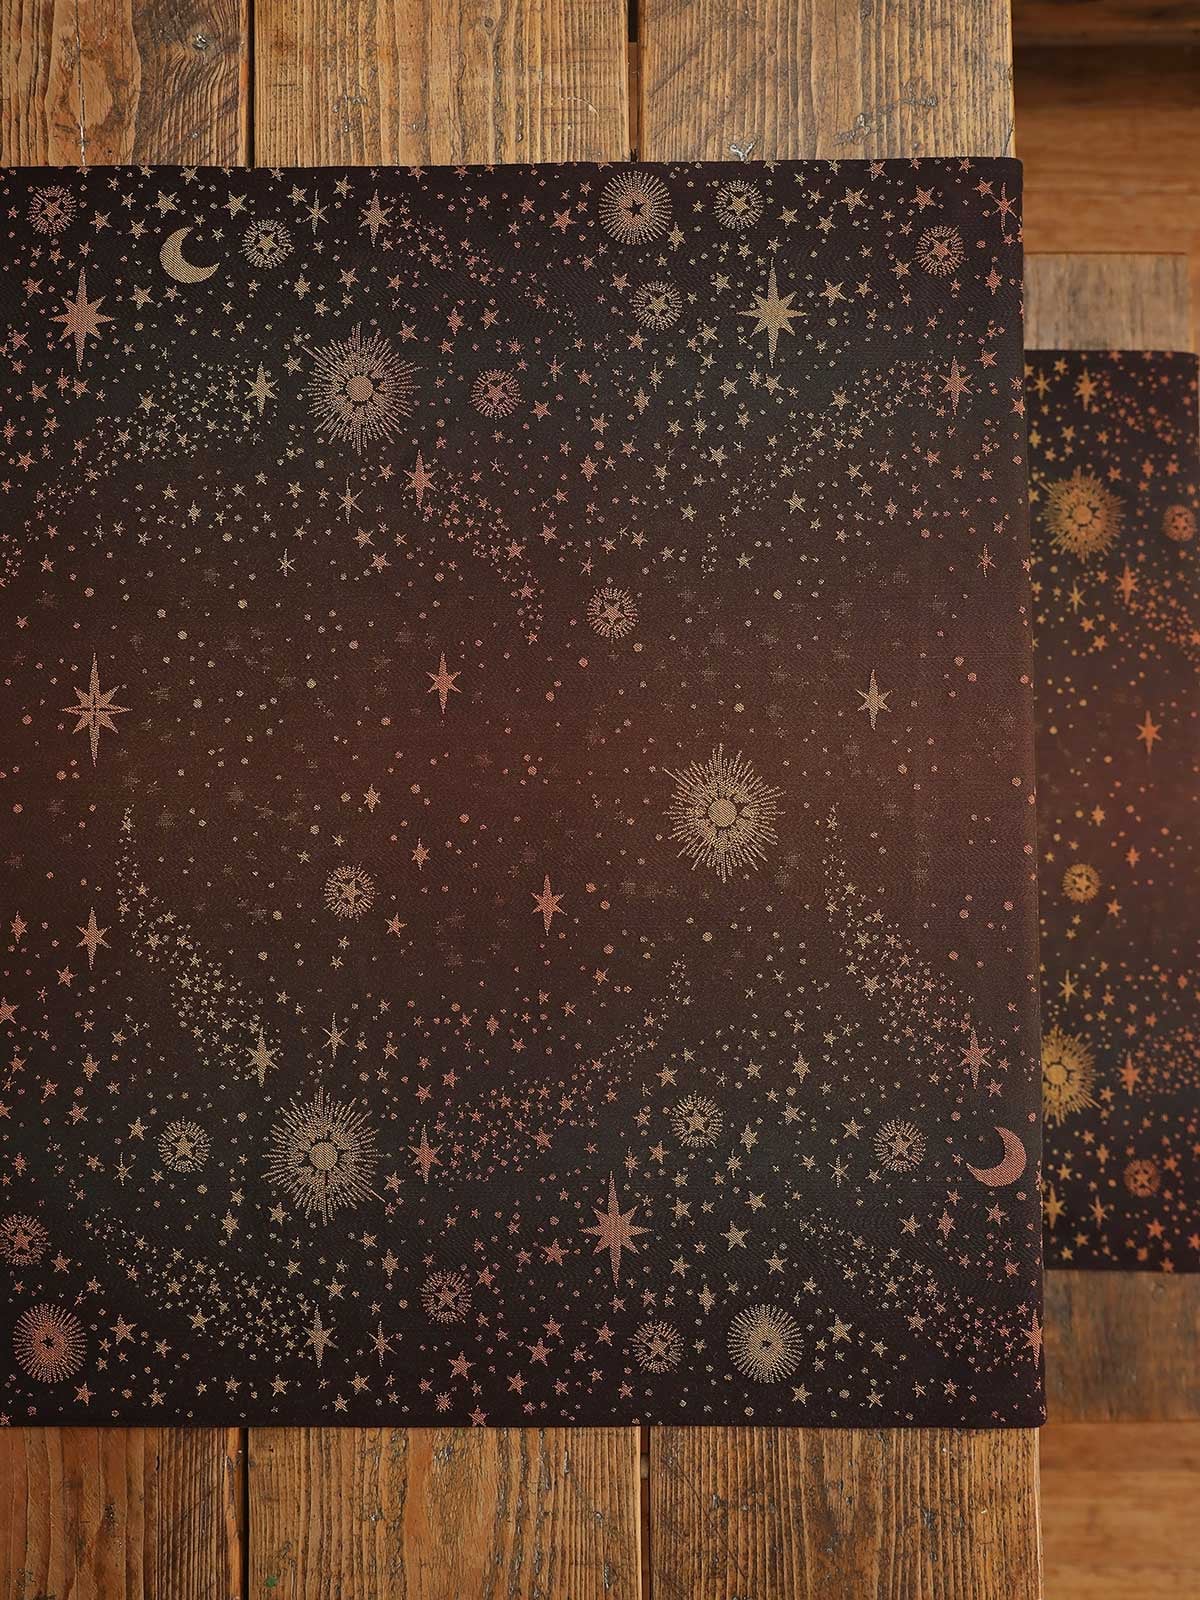 Oscha Constellation Interstellar Dust  Wrap  Image